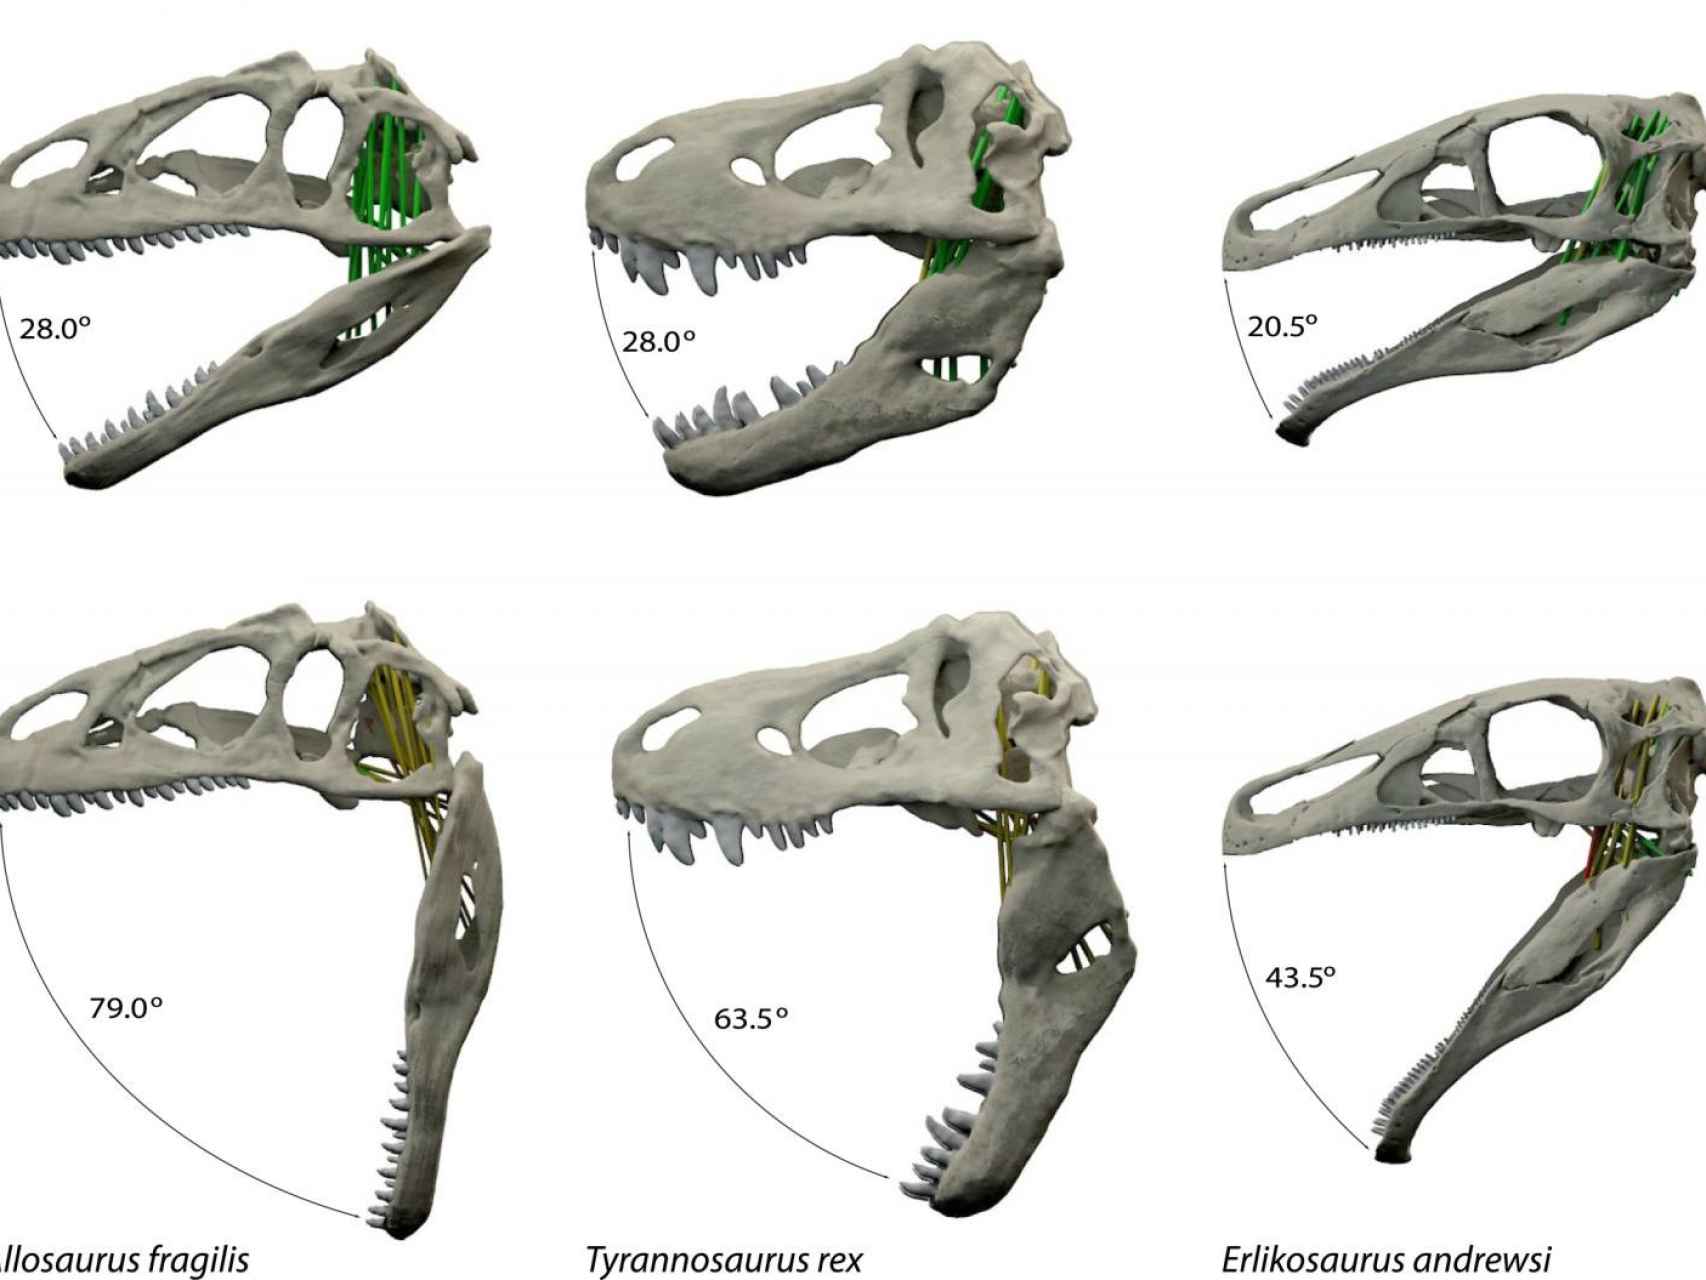 Apertura óptima y máxima apertura de las fauces de dinosaurios estudiados.